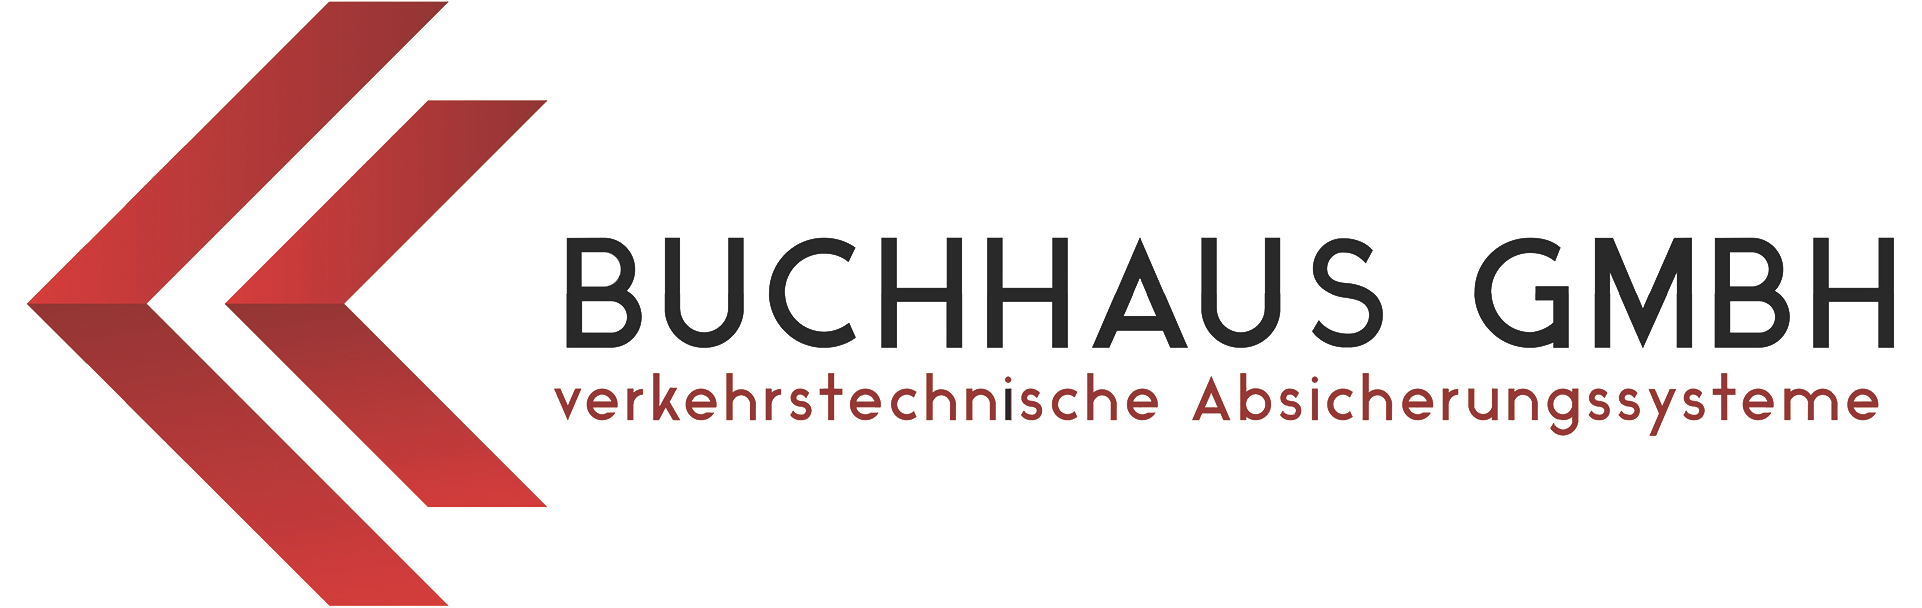 Buchhaus GmbH